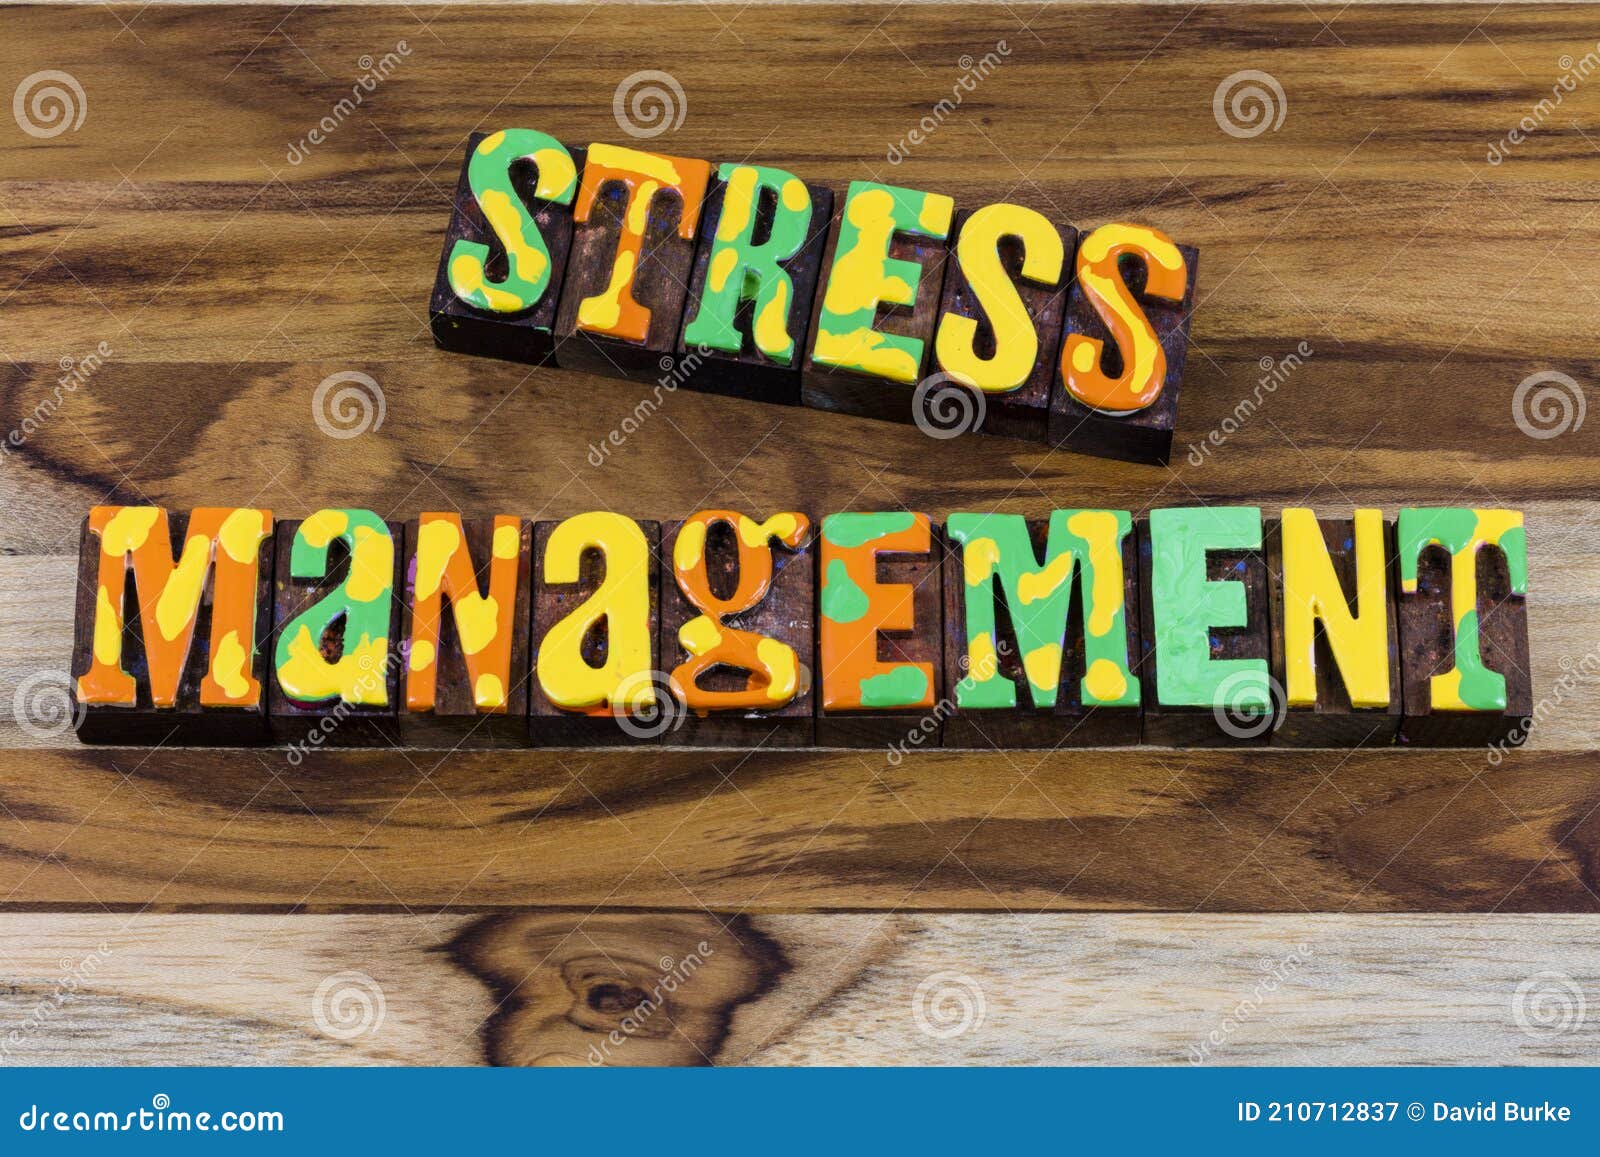 stress management accept change remain calm crises meditation